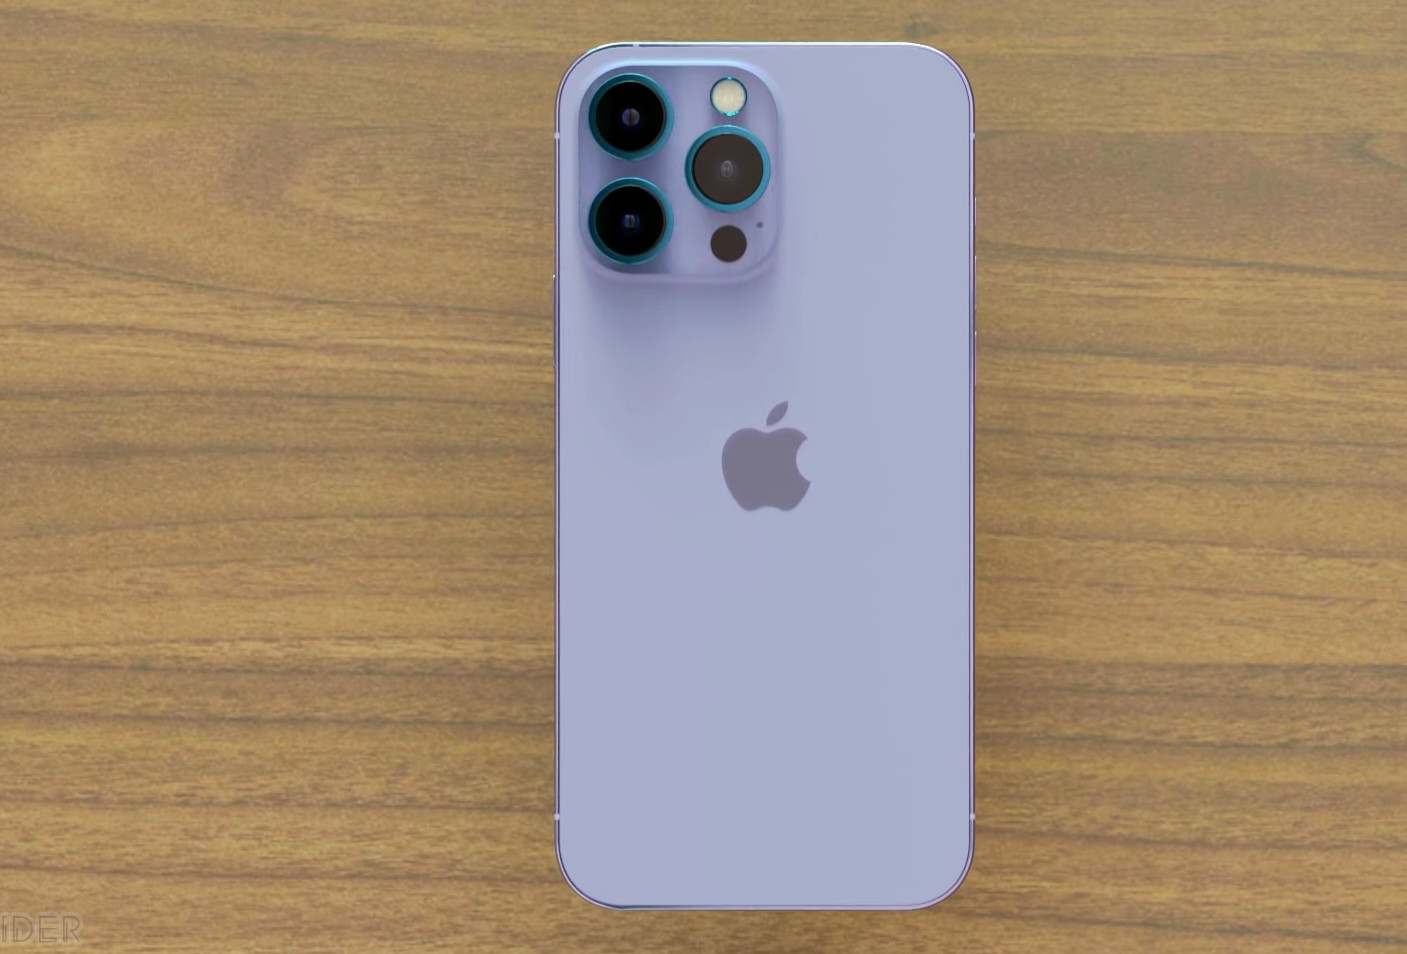 Bạn muốn biết iPhone 14 Max Pro màu tím hoạt động như thế nào? Xem ngay video giới thiệu về mẫu điện thoại cao cấp này để được trải nghiệm những tính năng đẳng cấp và con mắt được chiêm ngưỡng một sản phẩm thiết kế tuyệt đẹp.